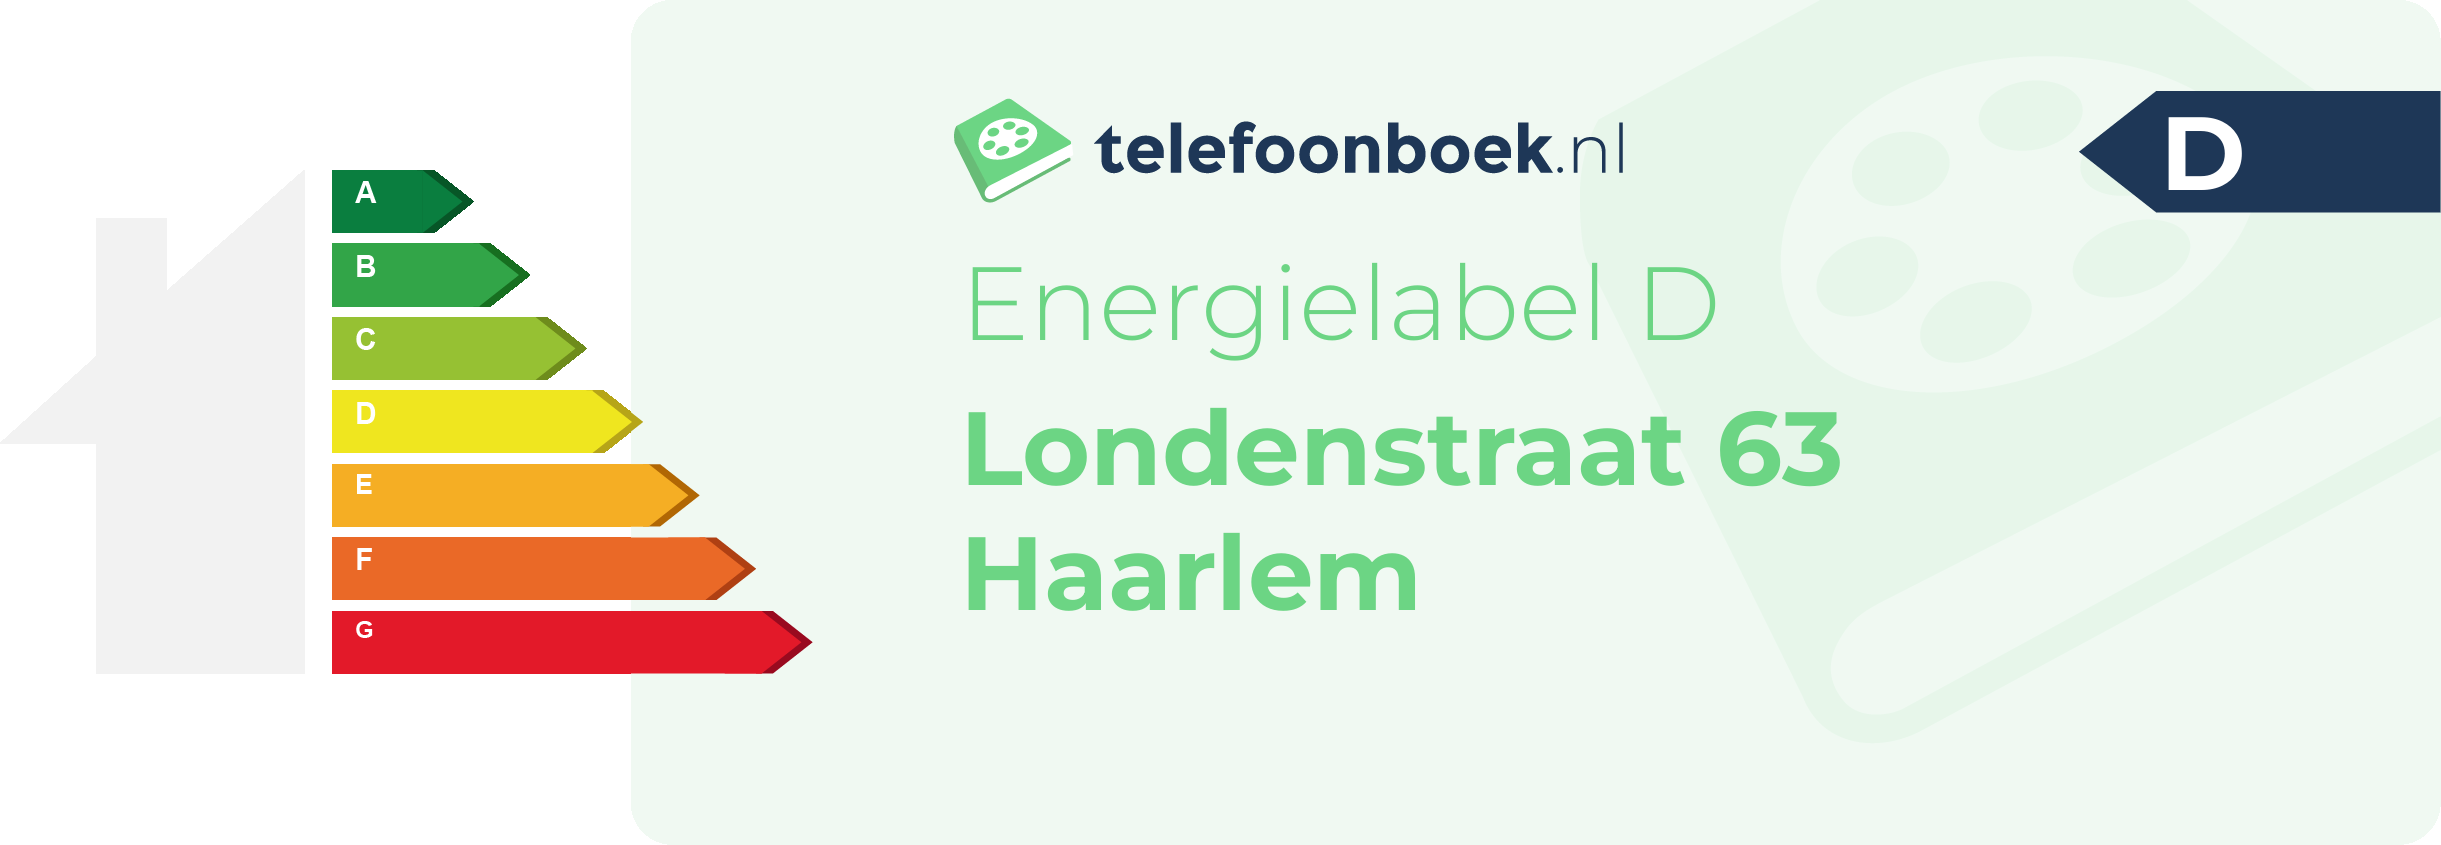 Energielabel Londenstraat 63 Haarlem